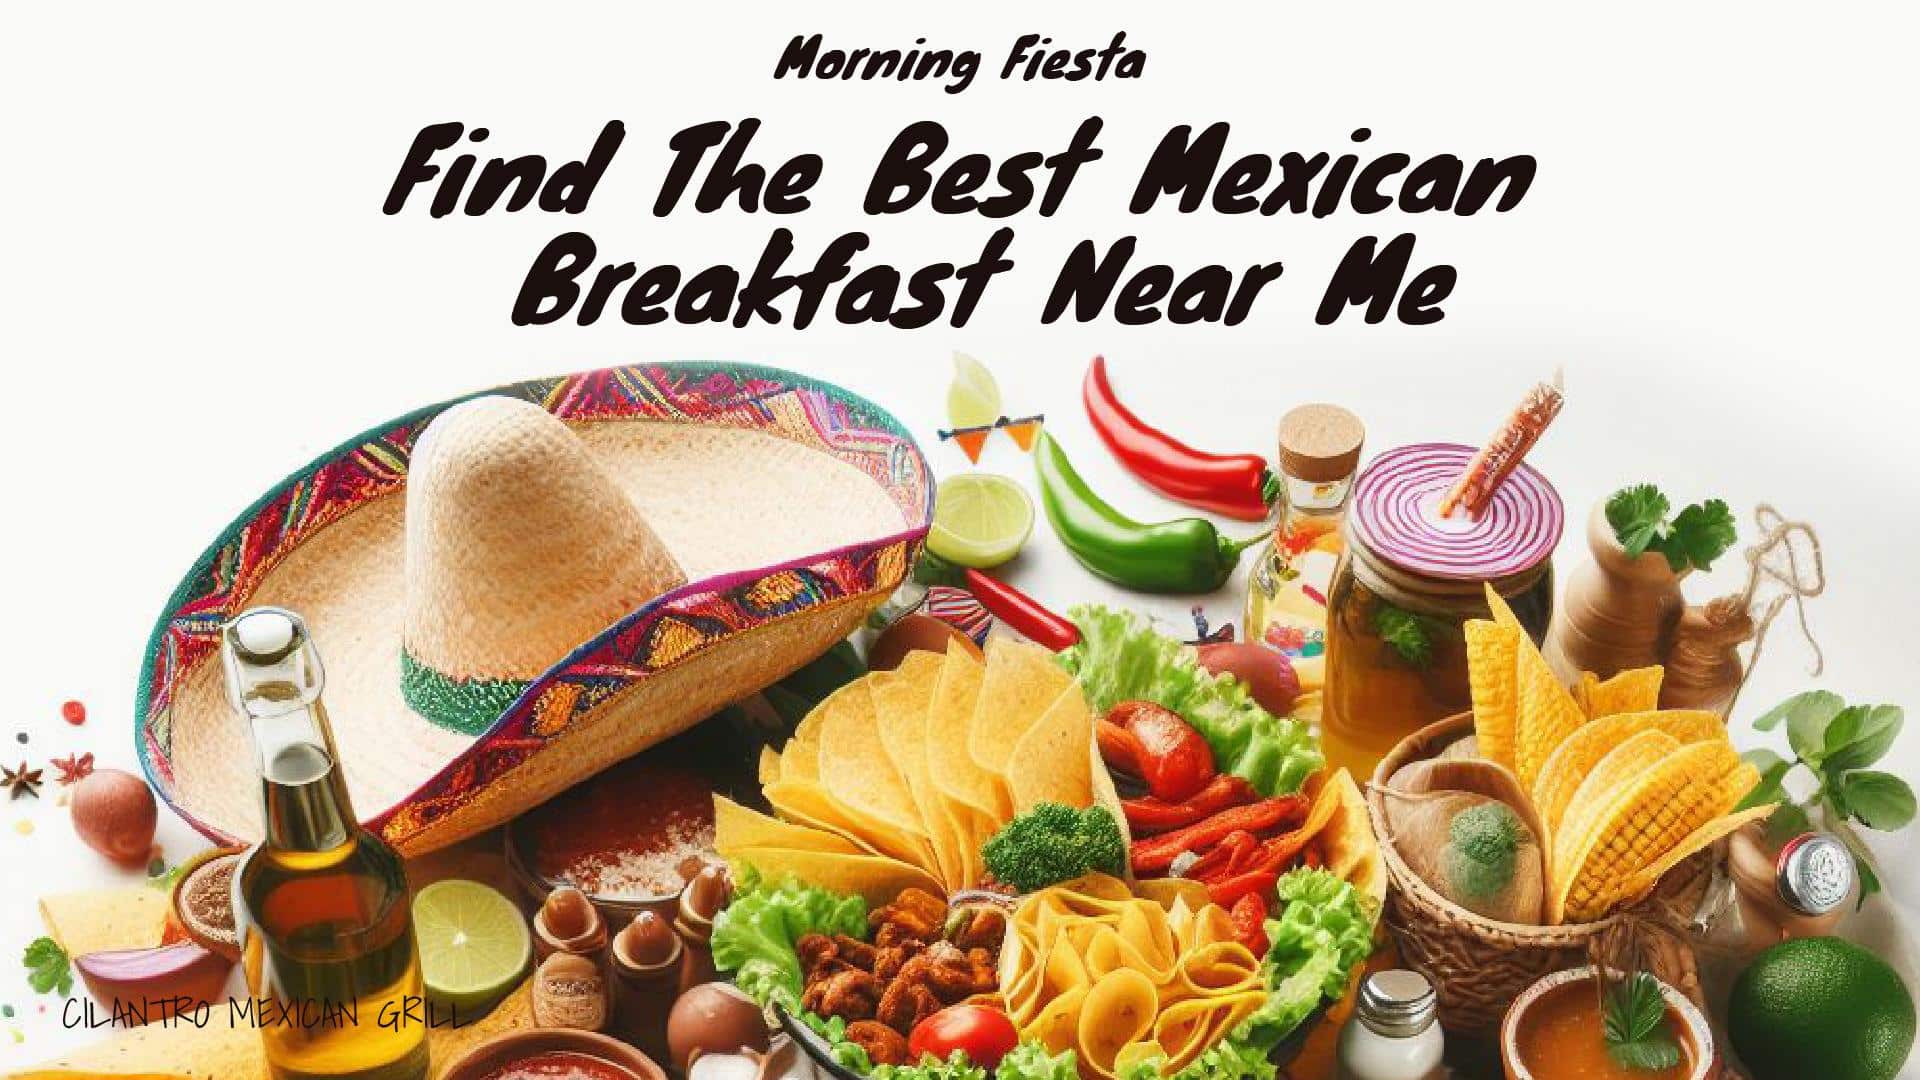 Morning Fiesta Find the Best Mexican Breakfast Near Me